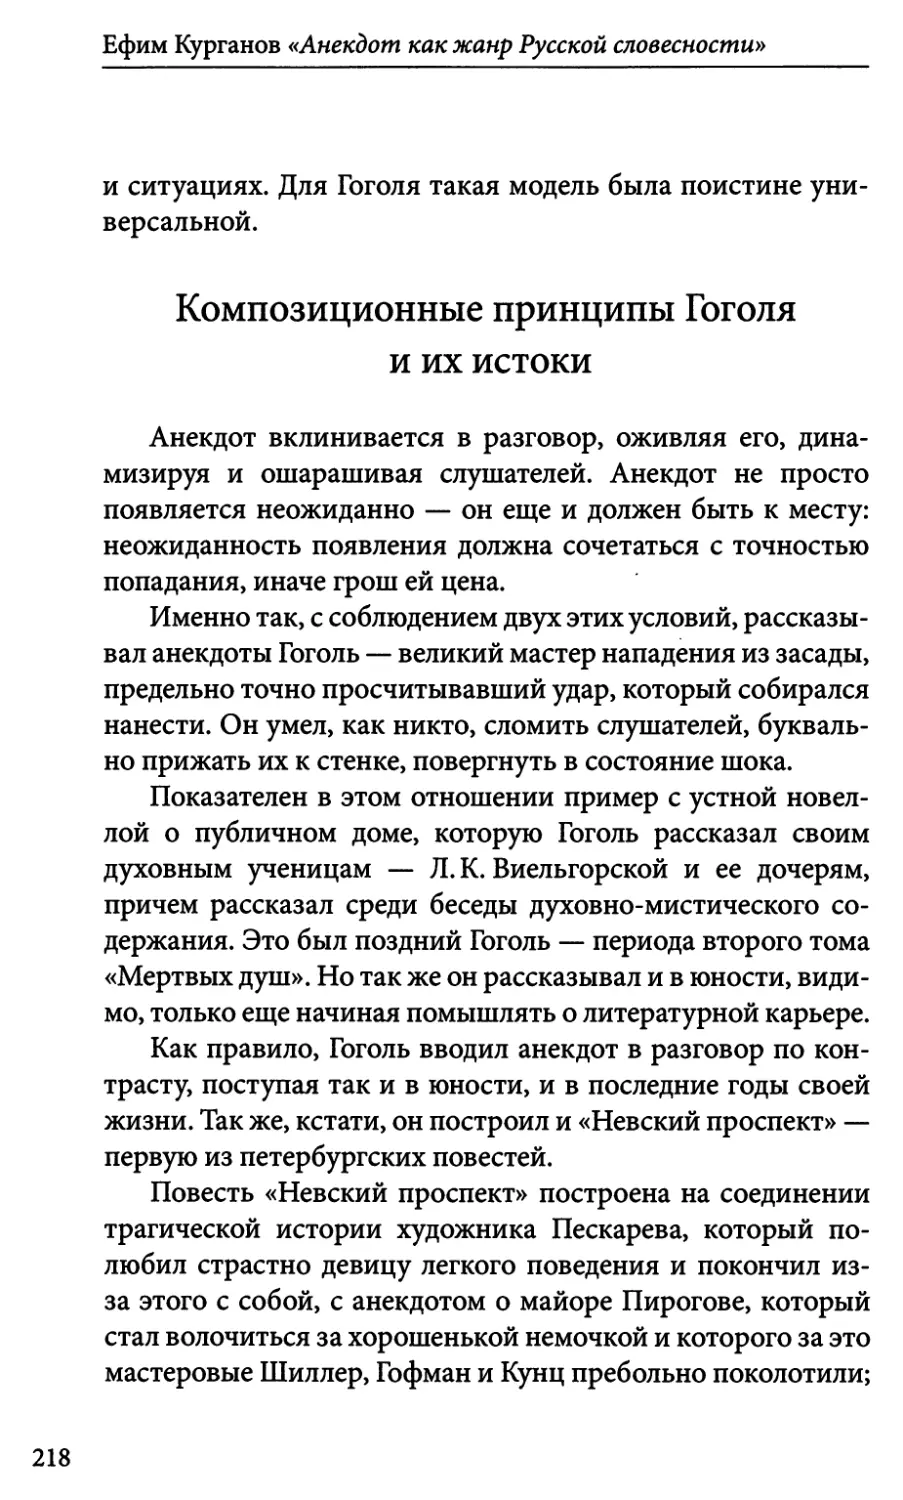 Композиционные принципы Гоголя и их истоки